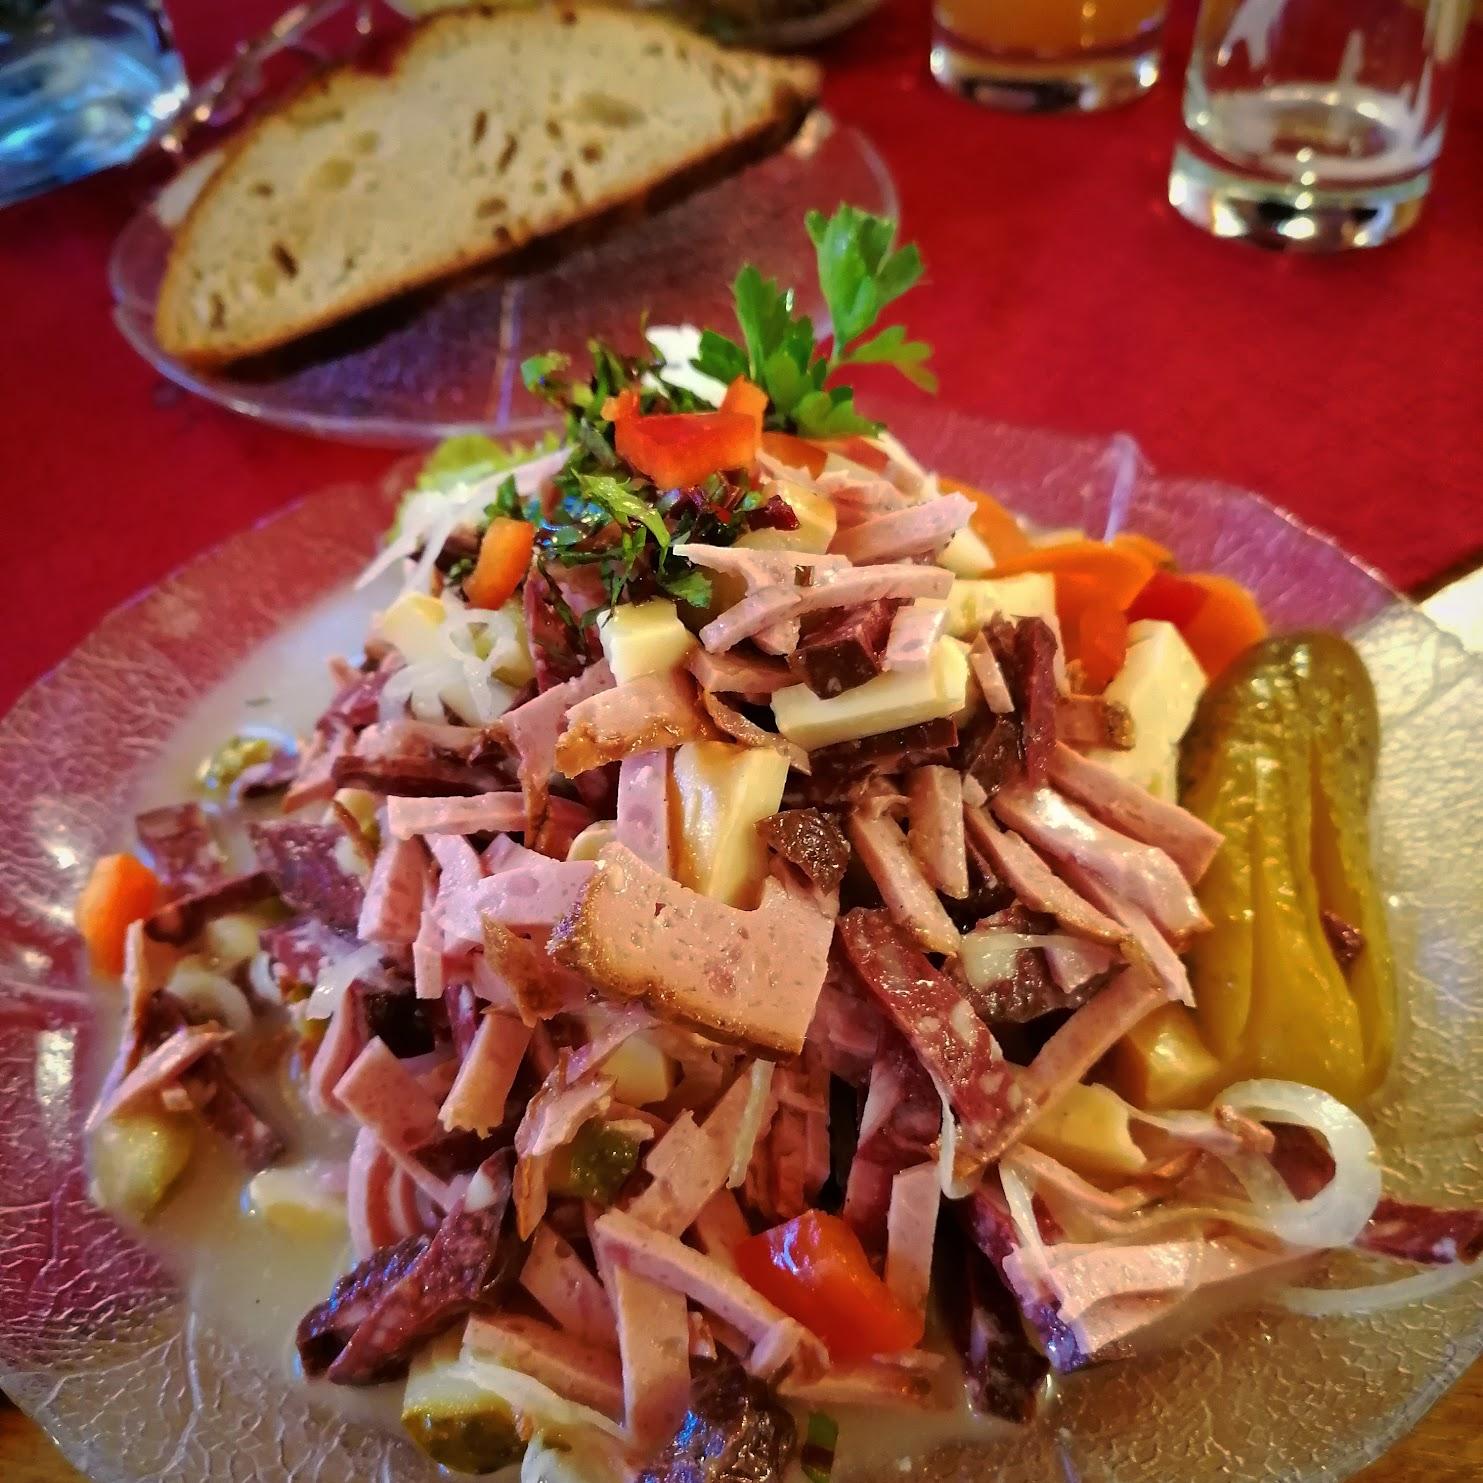 Restaurant "Lamm Stötten" in Geislingen an der Steige